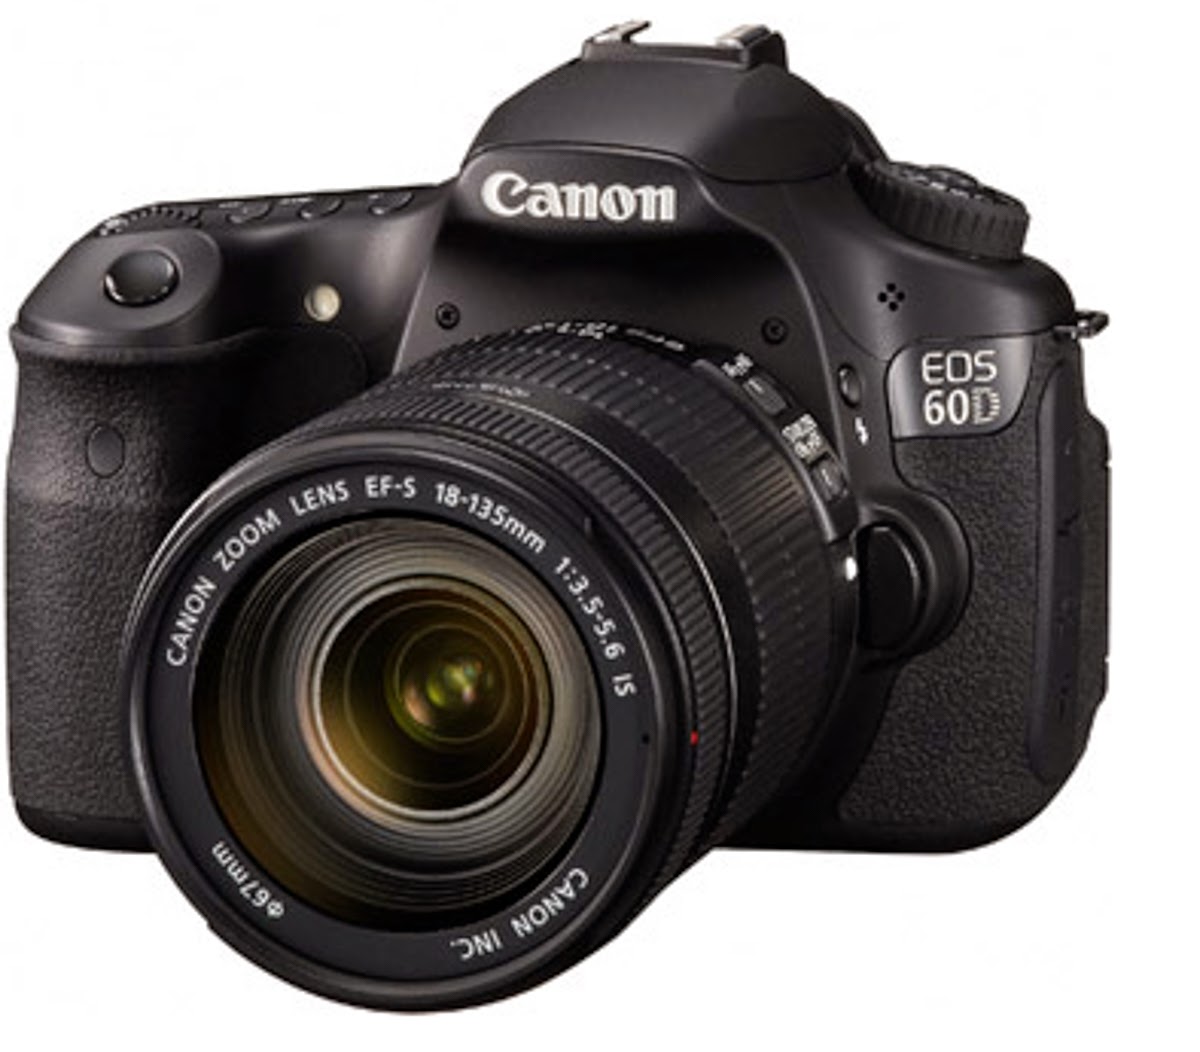 Canon Camera News 2018: Canon EOS 60D PDF User Guide / Manual Downloads